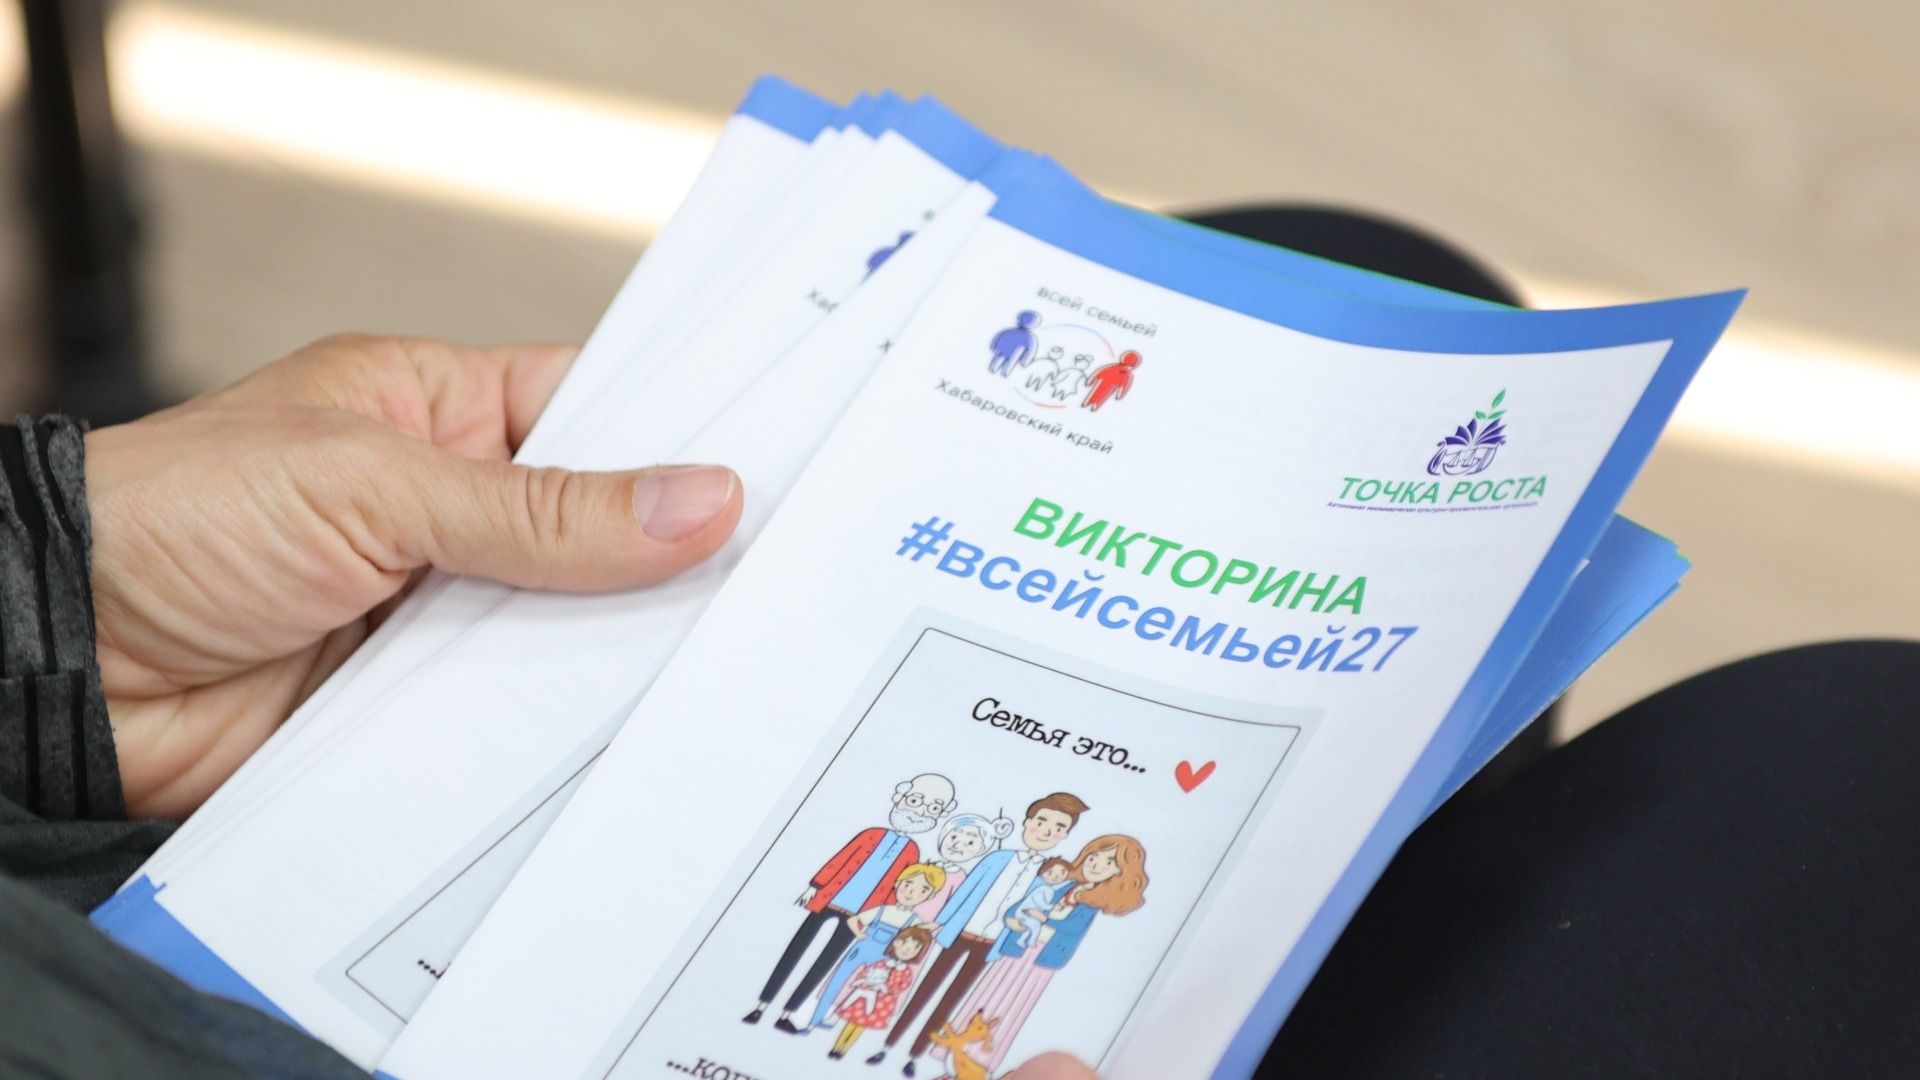 Пункты выдачи анкет викторины «Всей семьей» открылись в Хабаровском крае